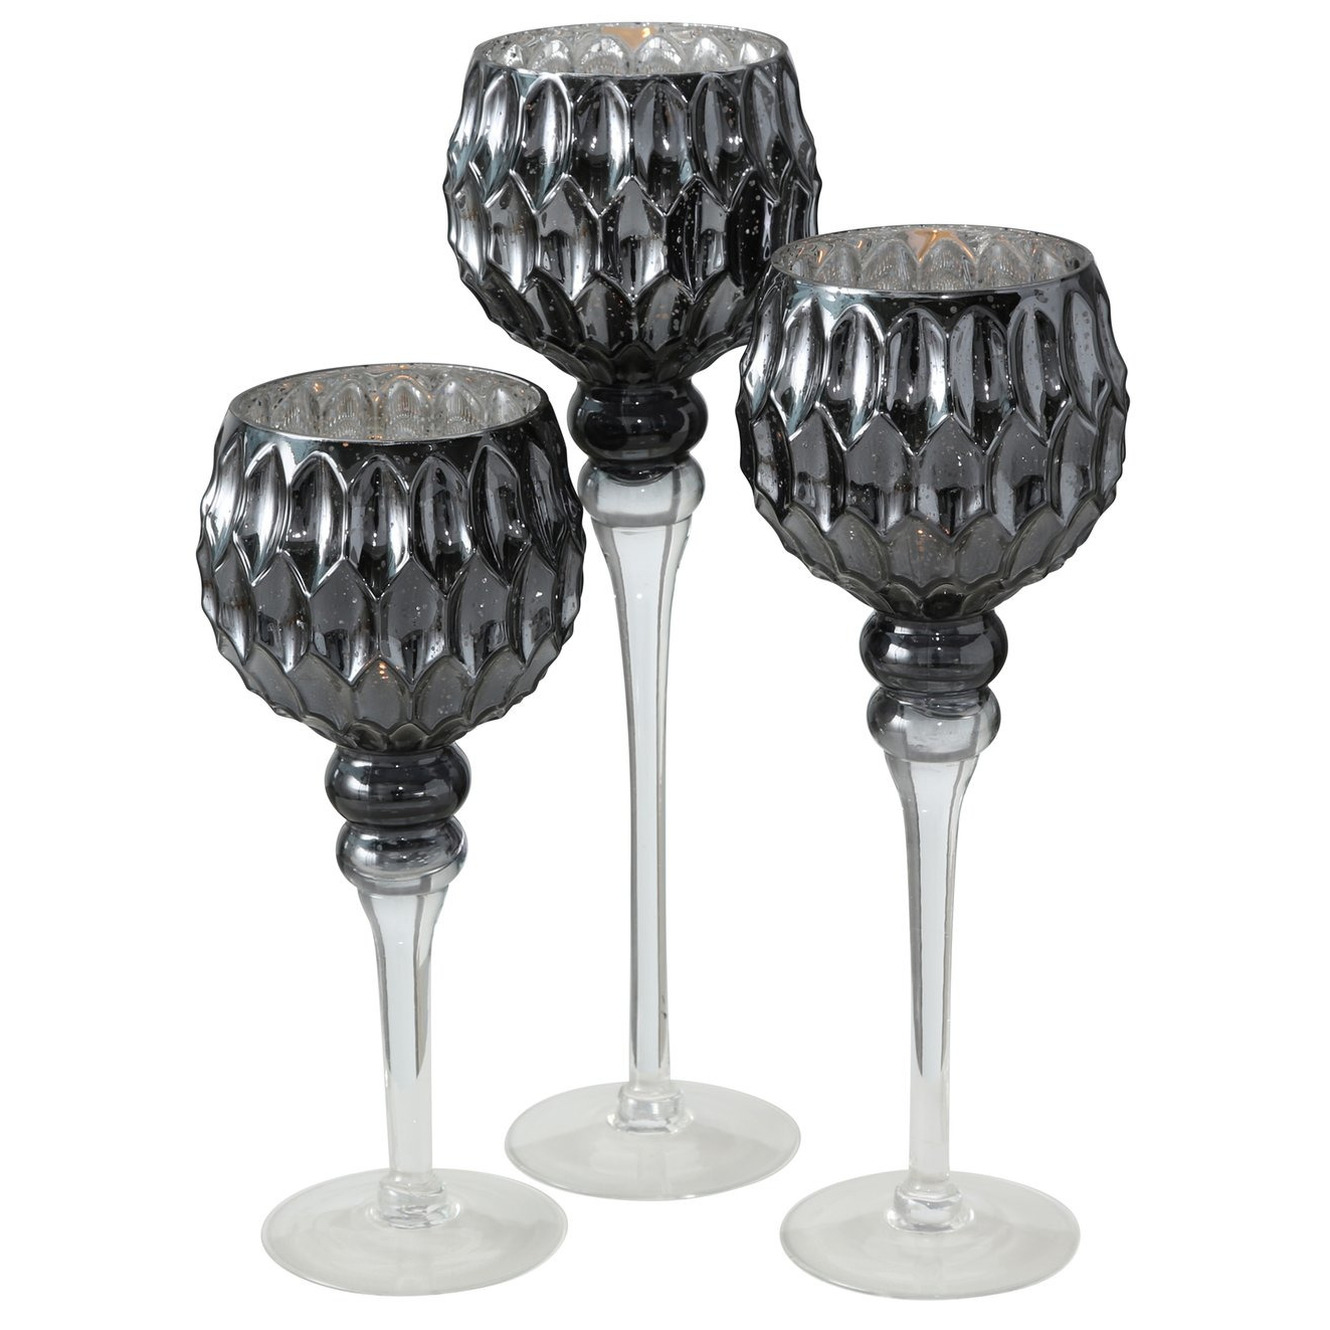 Luxe glazen design kaarsenhouders windlichten set van 3x stuks antraciet zilver transparant 30 40 cm